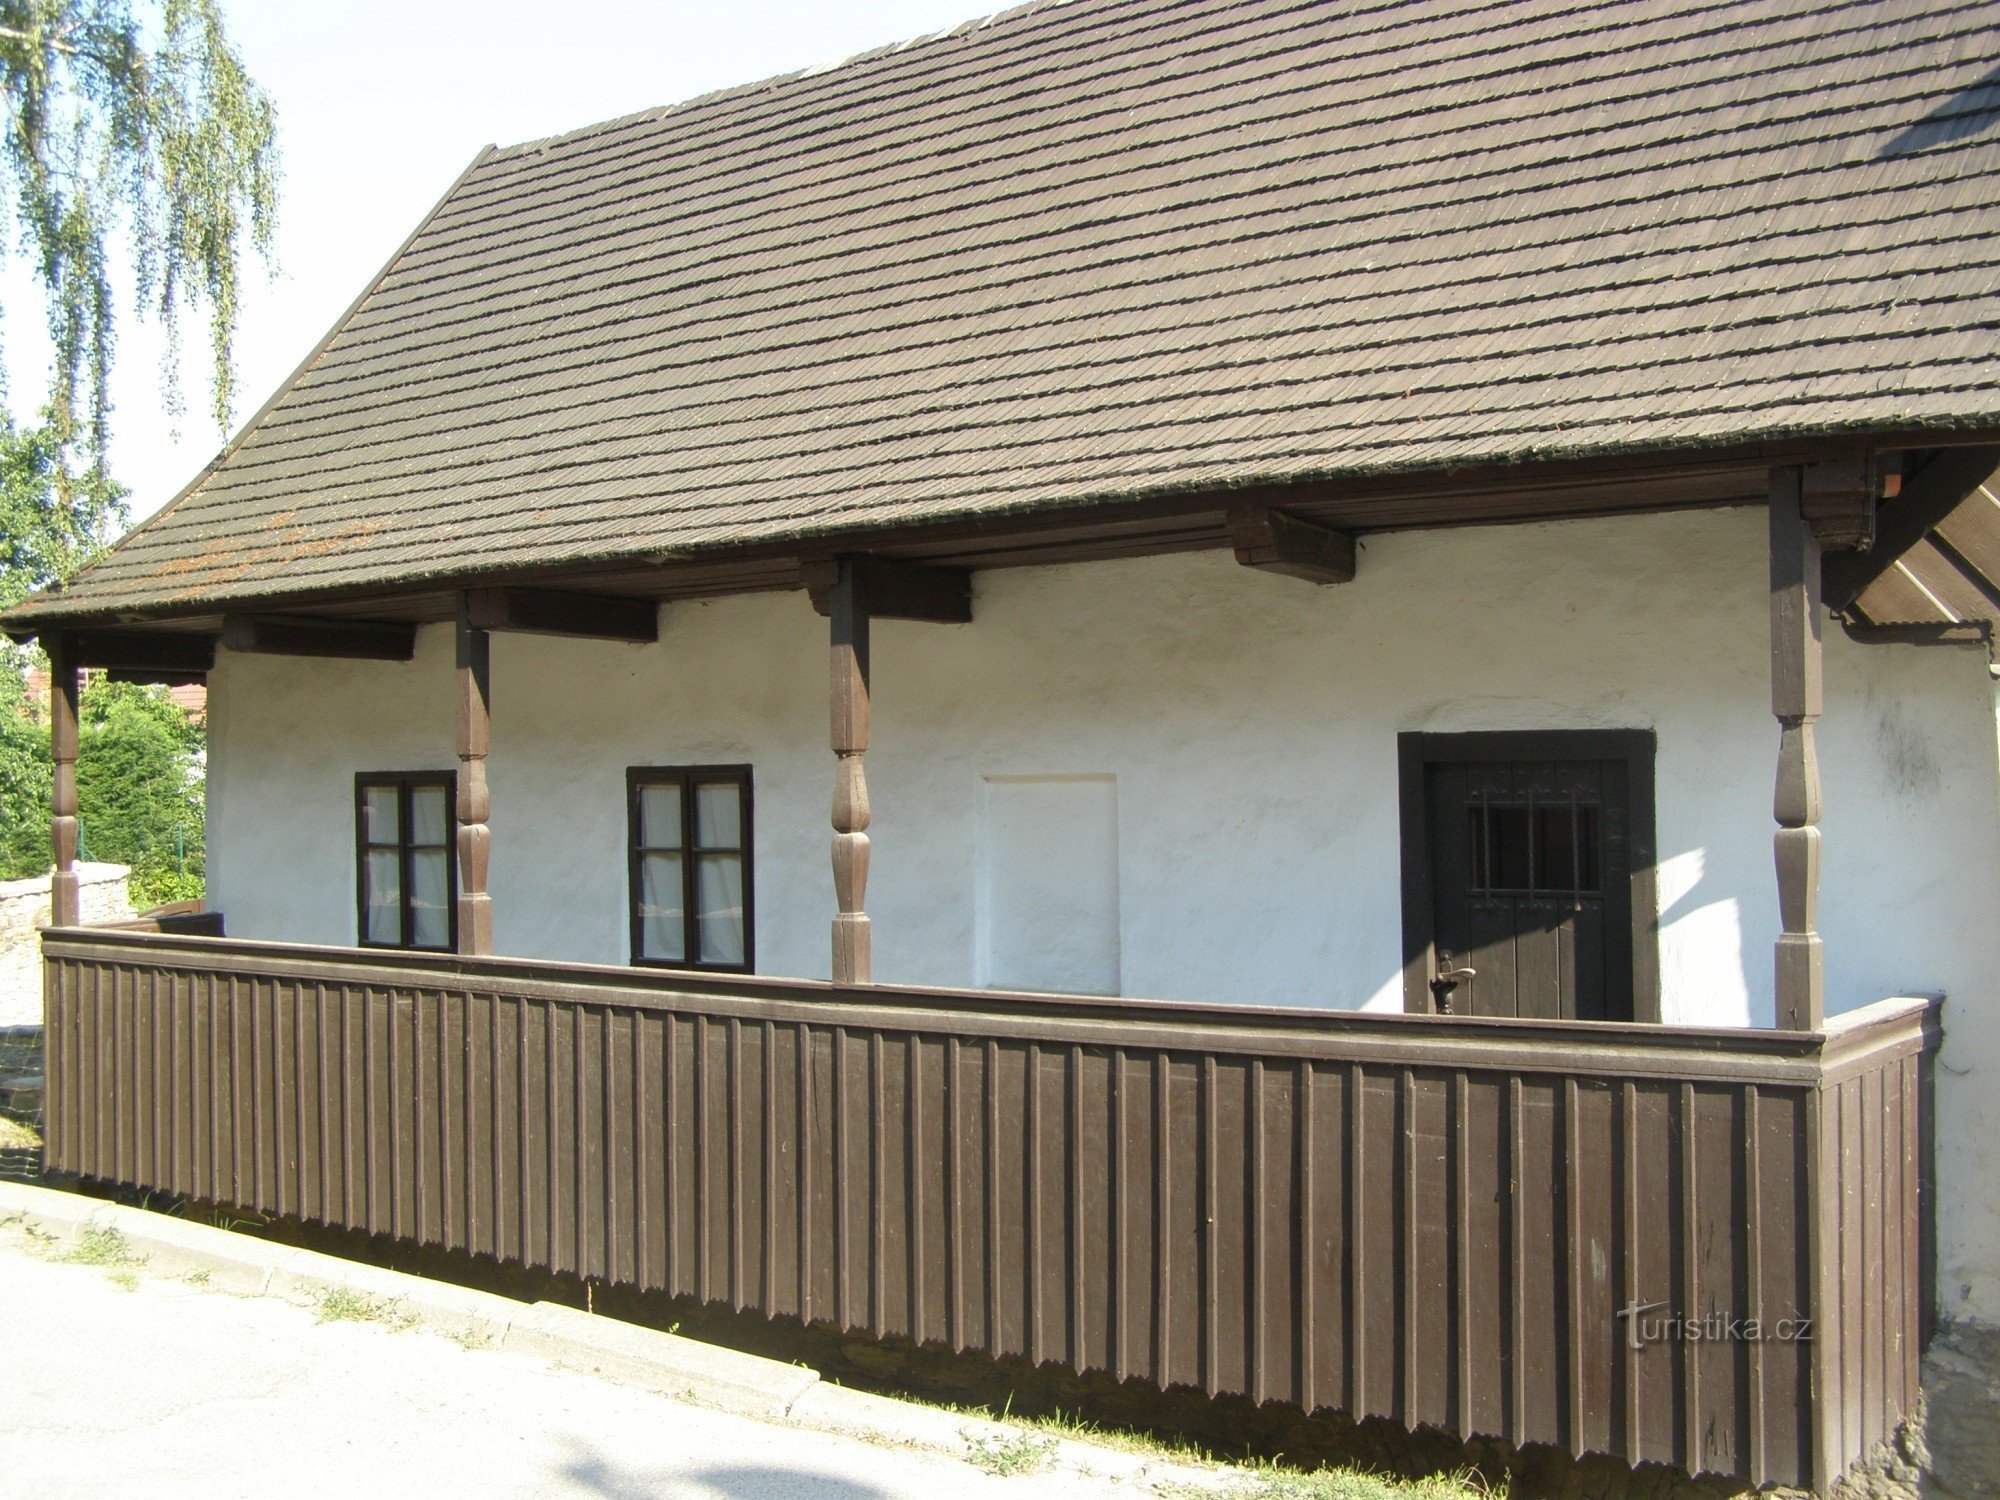 Dobruška - de geboorteplaats van FLVěk (Heka)